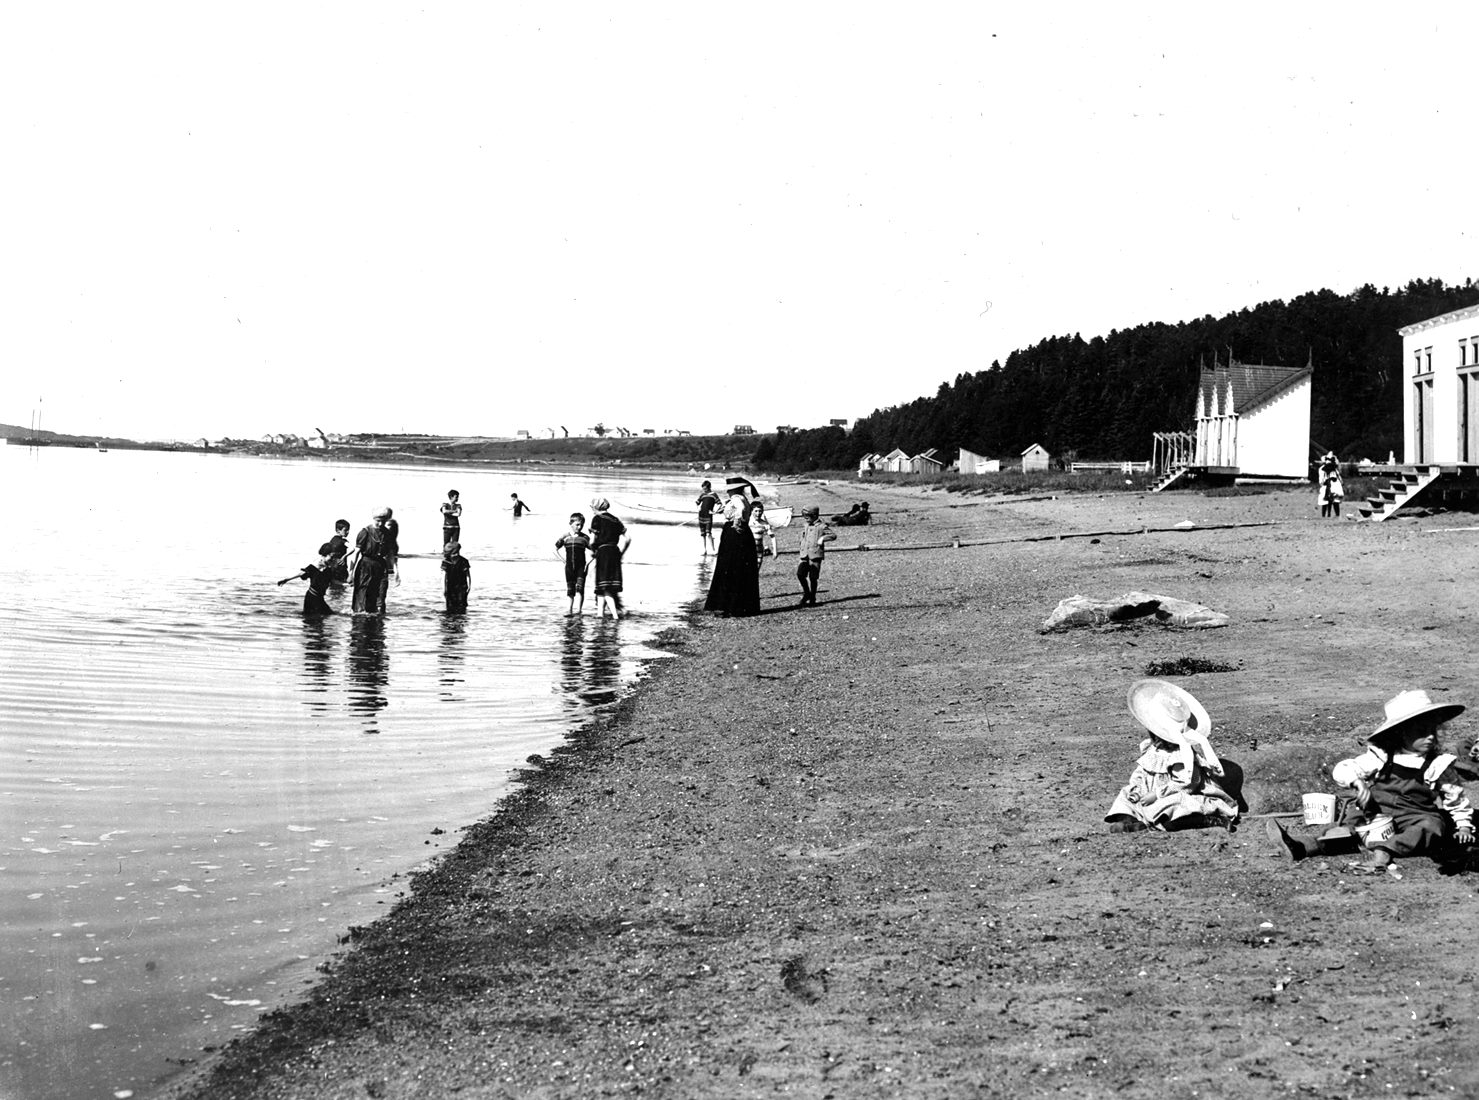 Des femmes et des enfants profitent de la plage. Deux enfants jouent dans le sable. Les baigneurs portent des maillots longs.